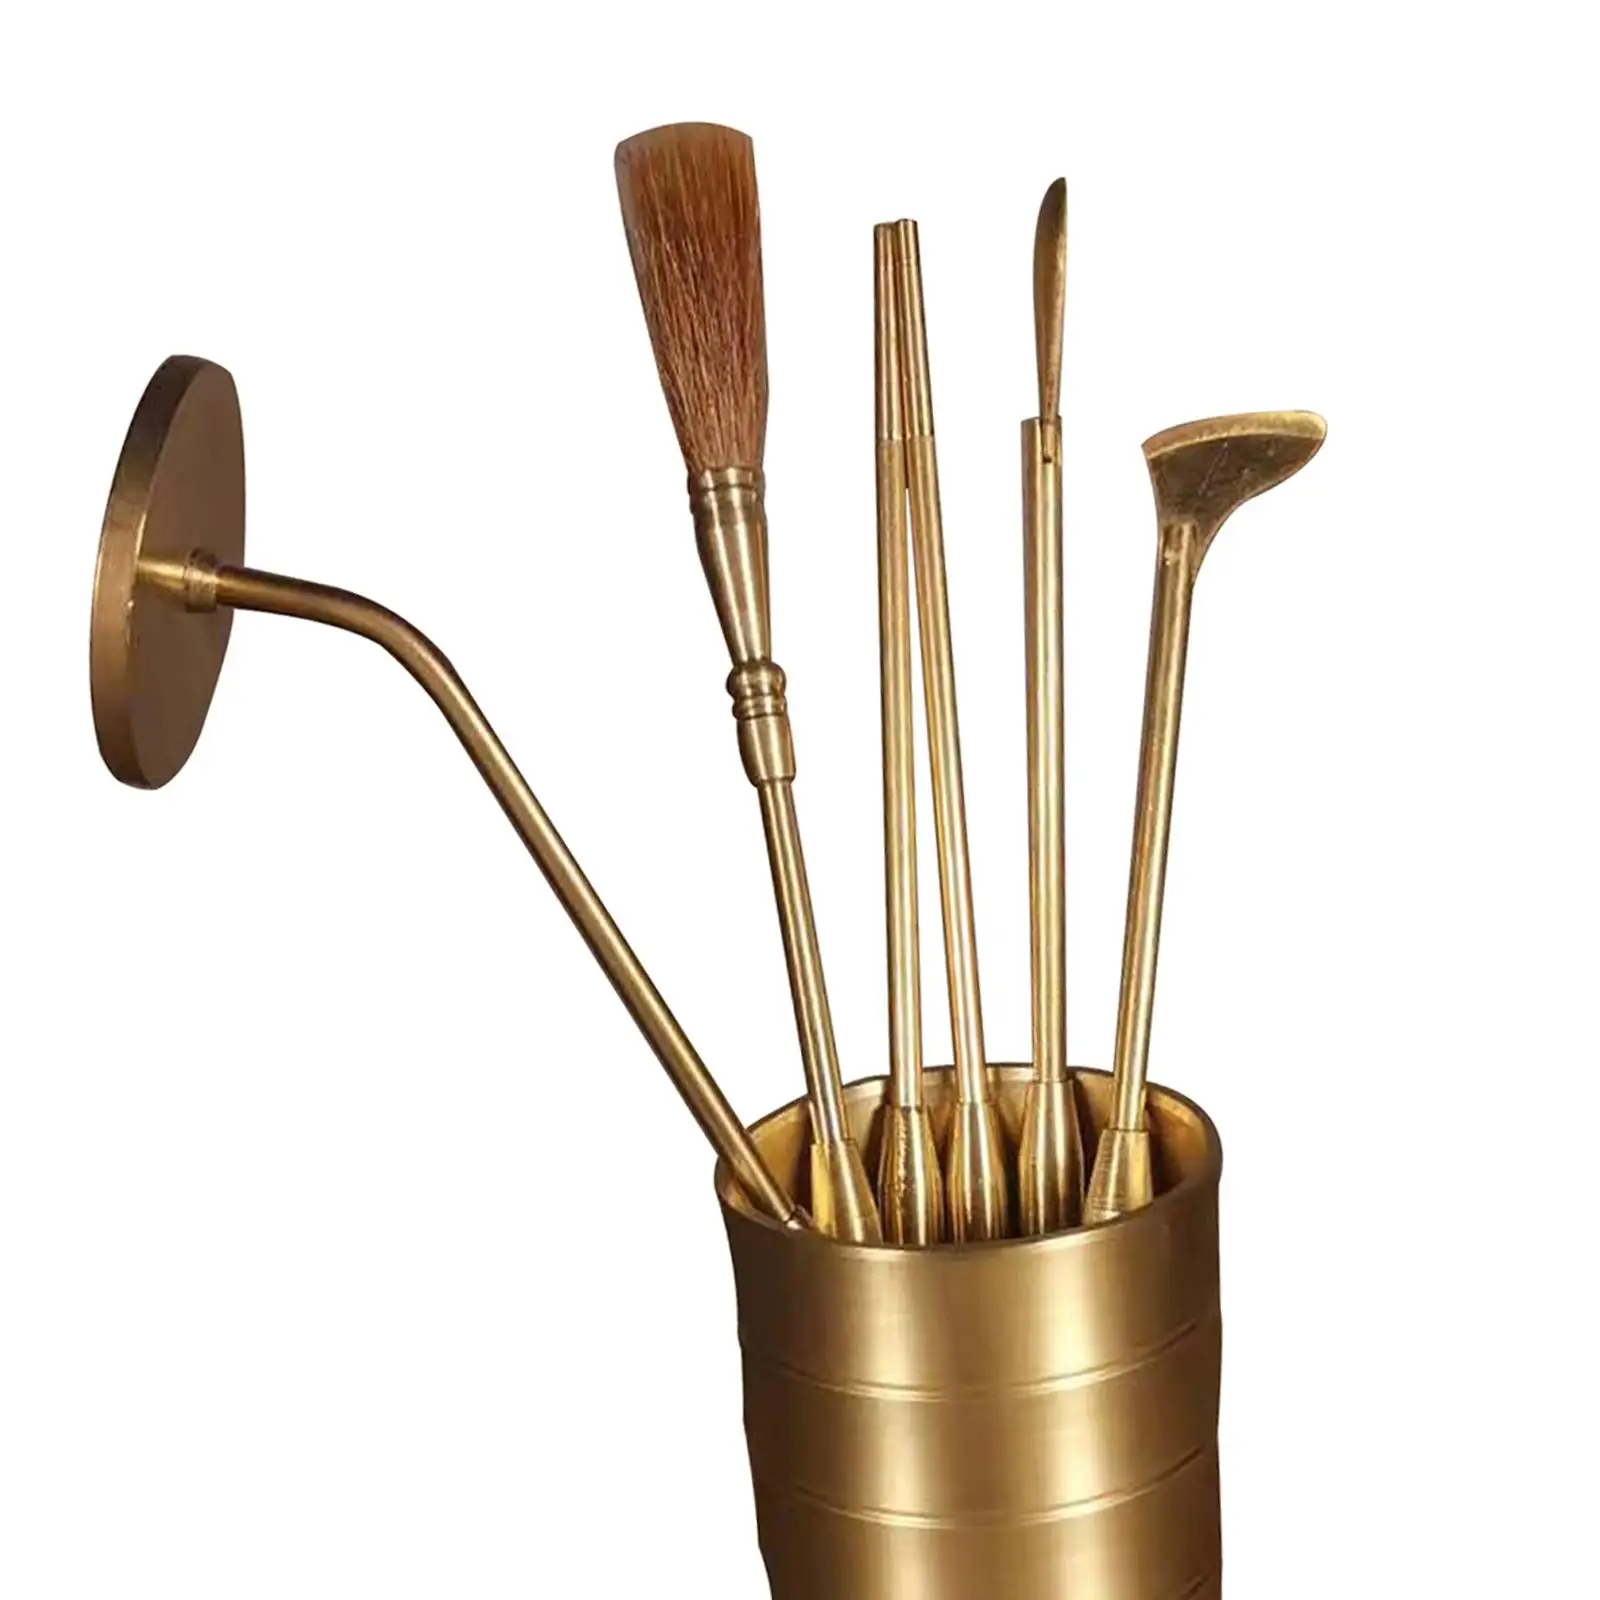 Copper Incense Making Kit Censer Tool Set Long Handle Incense Brush Incense Spoon Fragrance for Meditation Bedroom Decoration